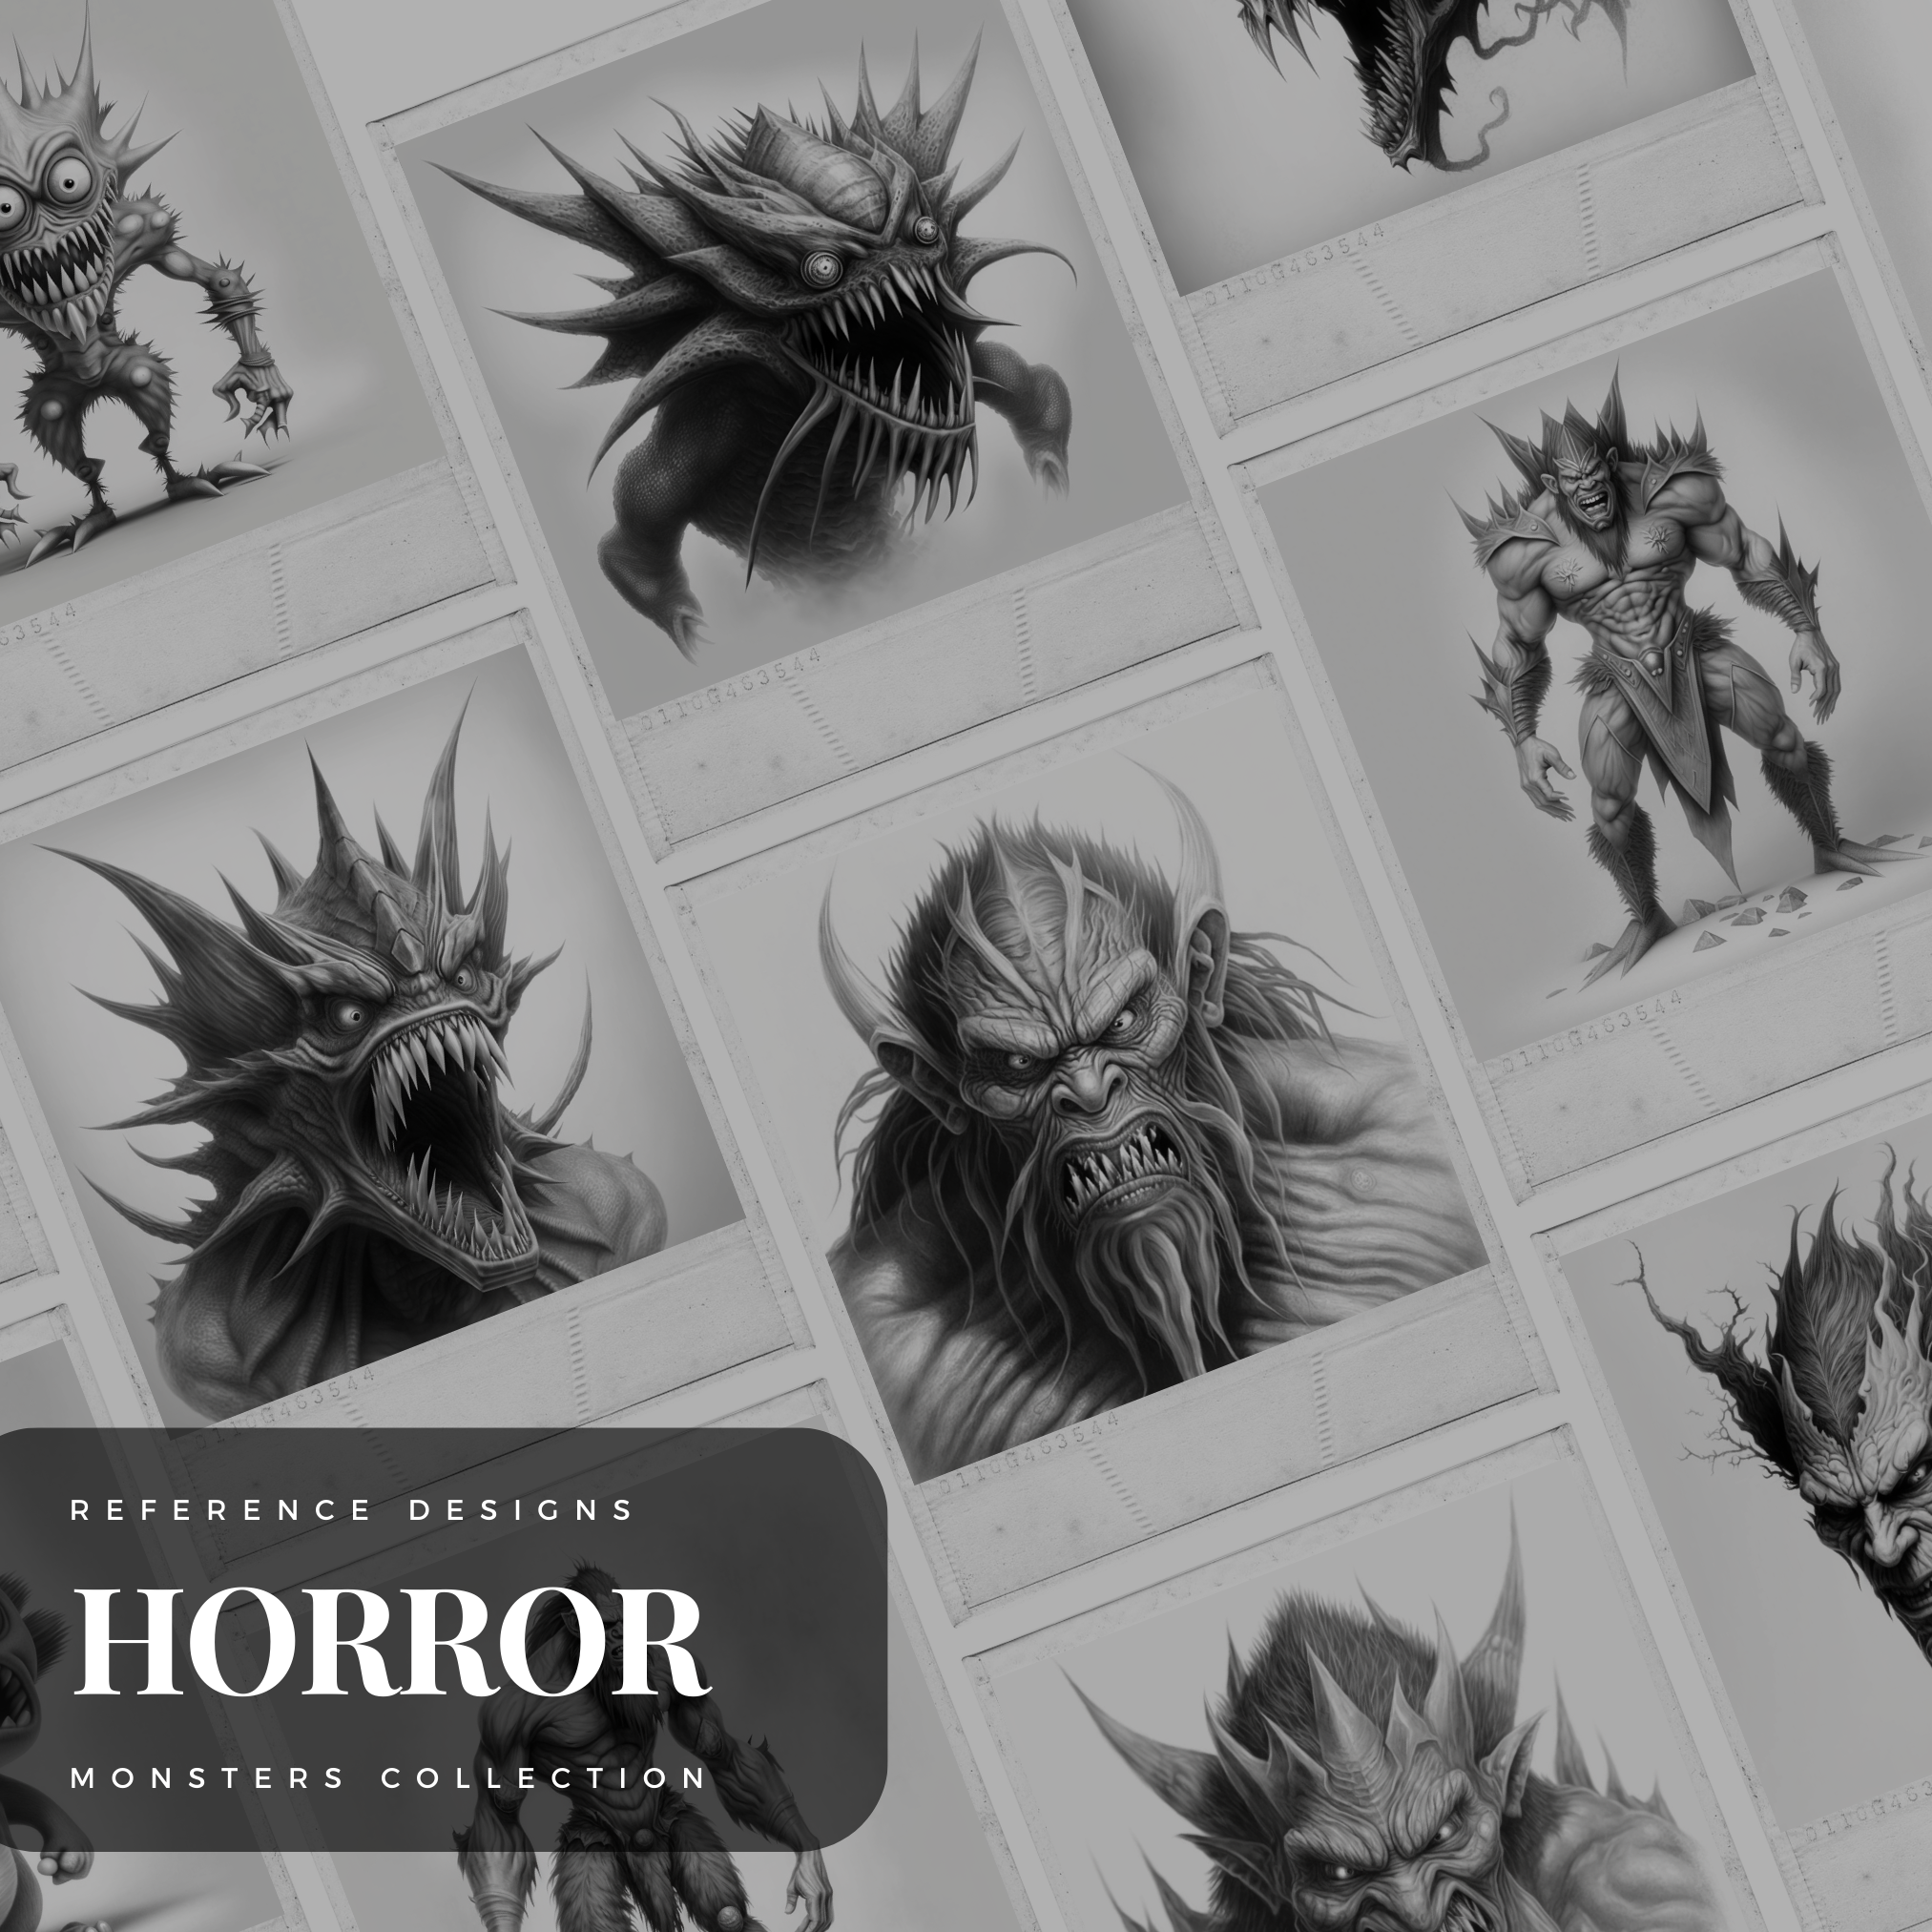 Monsters Digital Horror Design Collection: 50 Procreate- und Skizzenbuchbilder